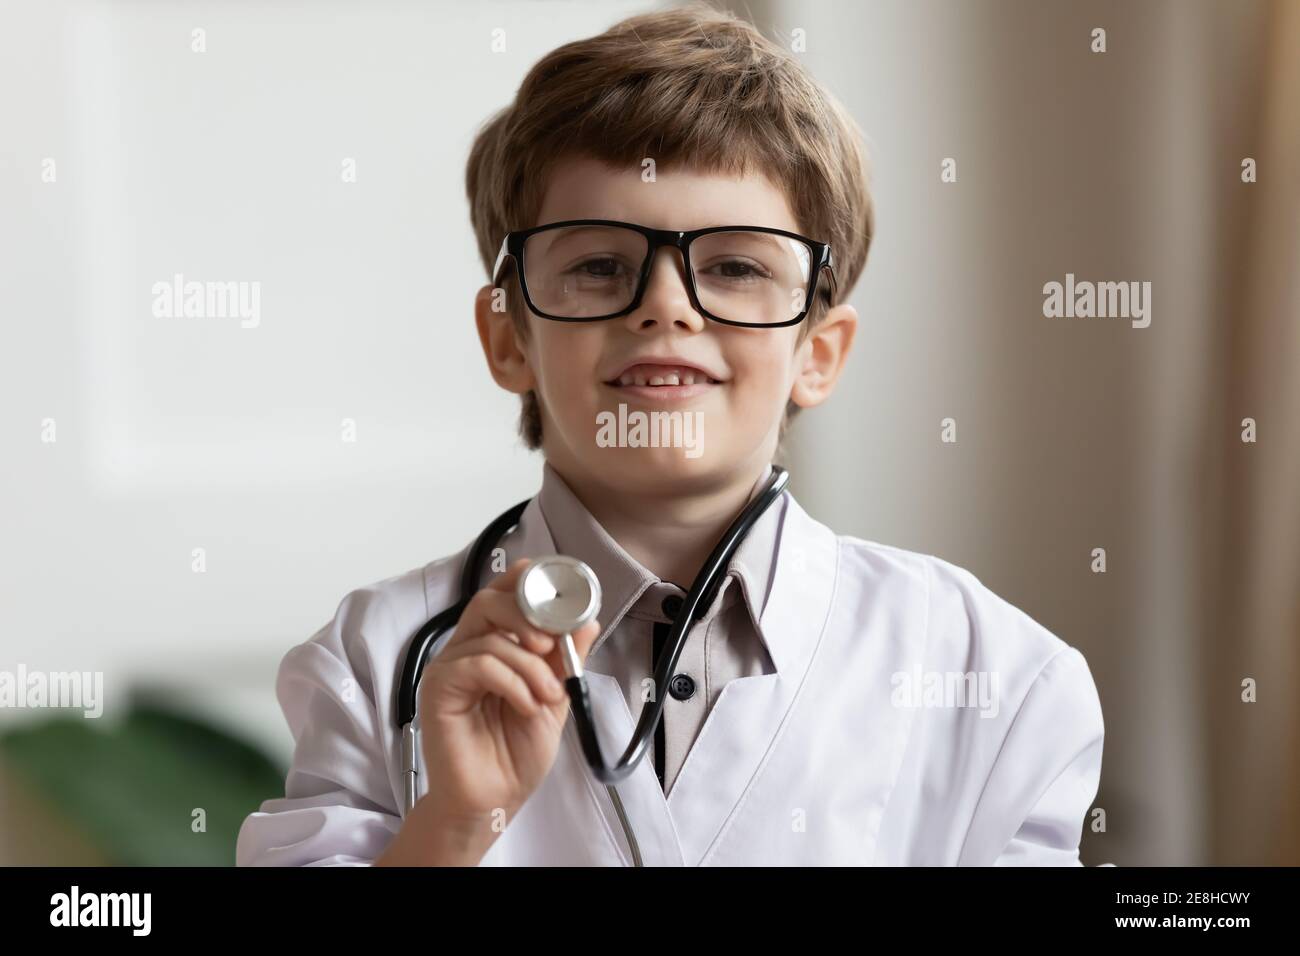 Ritratto di piccolo ragazzo carino in uniforme medica Foto Stock